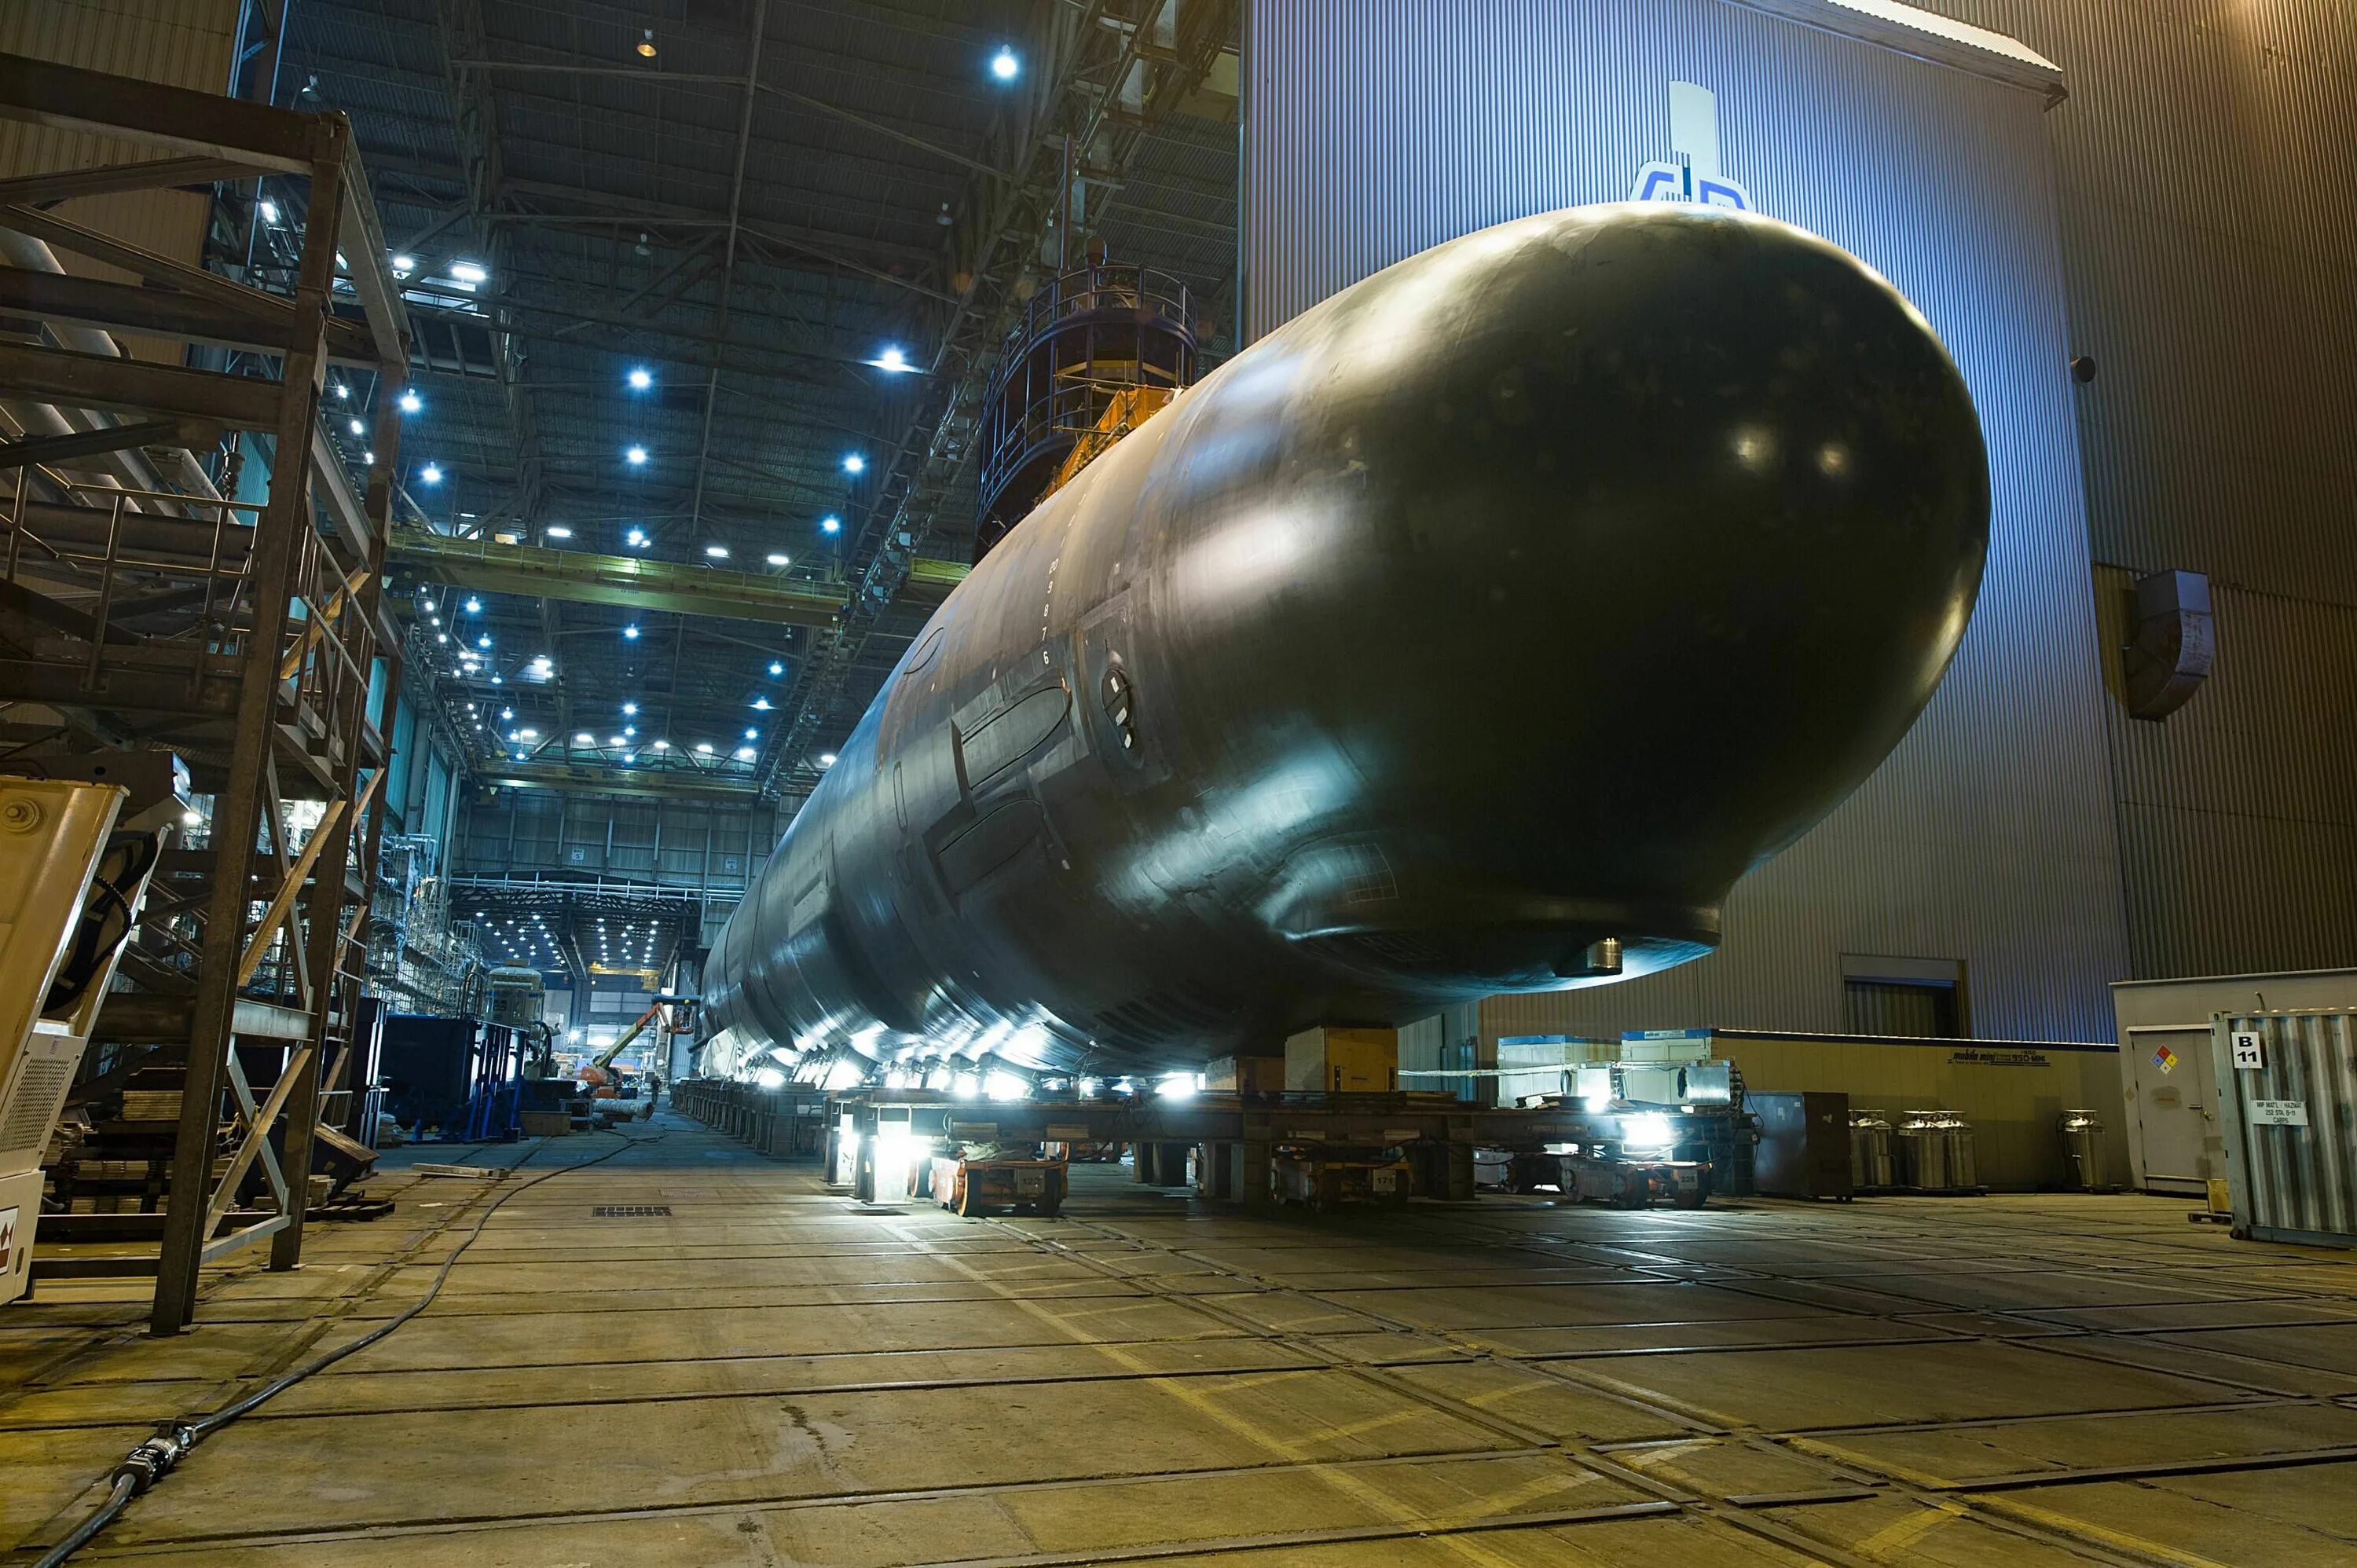 New sub. АПЛ пятого поколения хаски. USS North Dakota (SSN-784). Хаски подводная лодка пятого поколения. Хаски» — российские атомные подводные лодки пятого поколения.